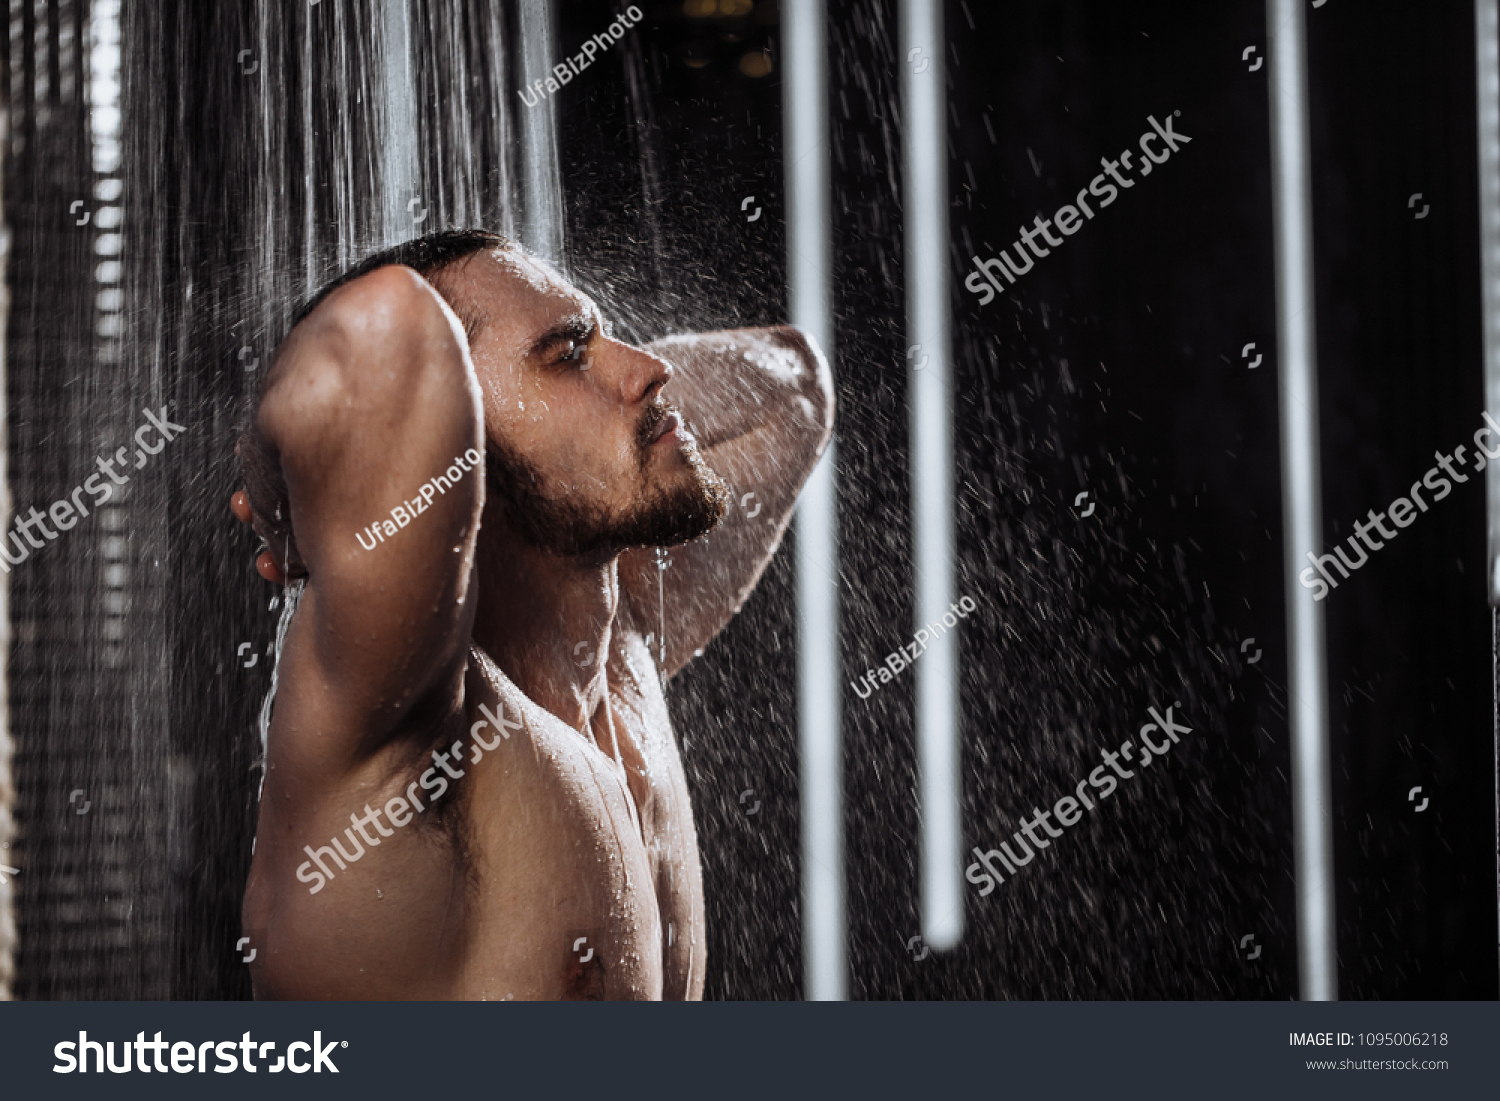 Man Showering Images Stock Photos Vectors Shutterstock